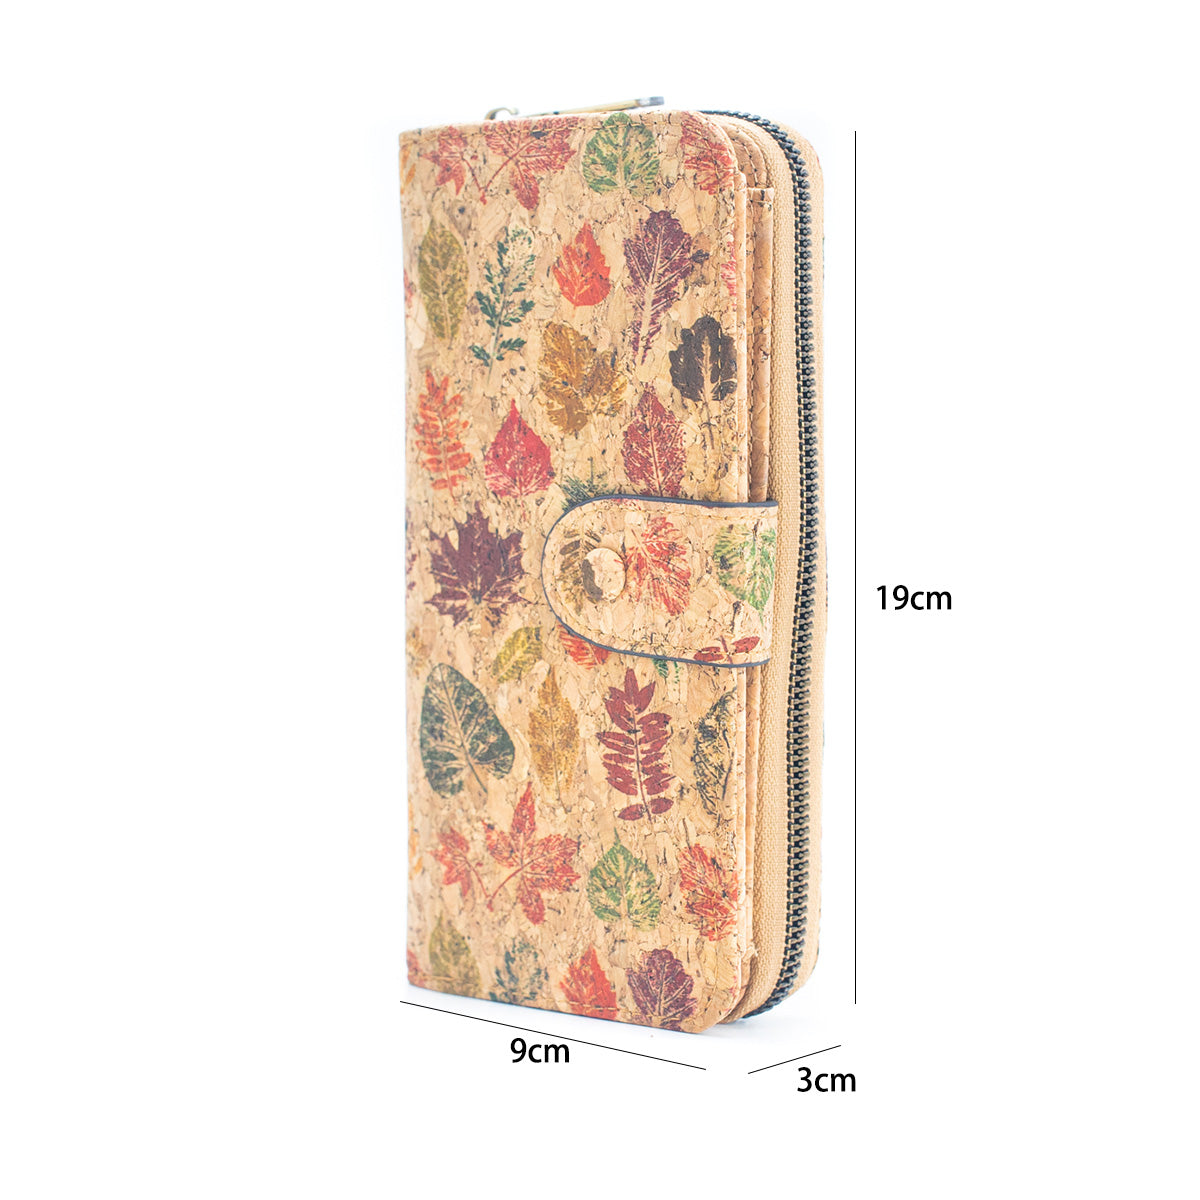 6 portefeuilles en liège naturel avec motifs floraux (paquet de 6 unités) HY-033-MIX-6 